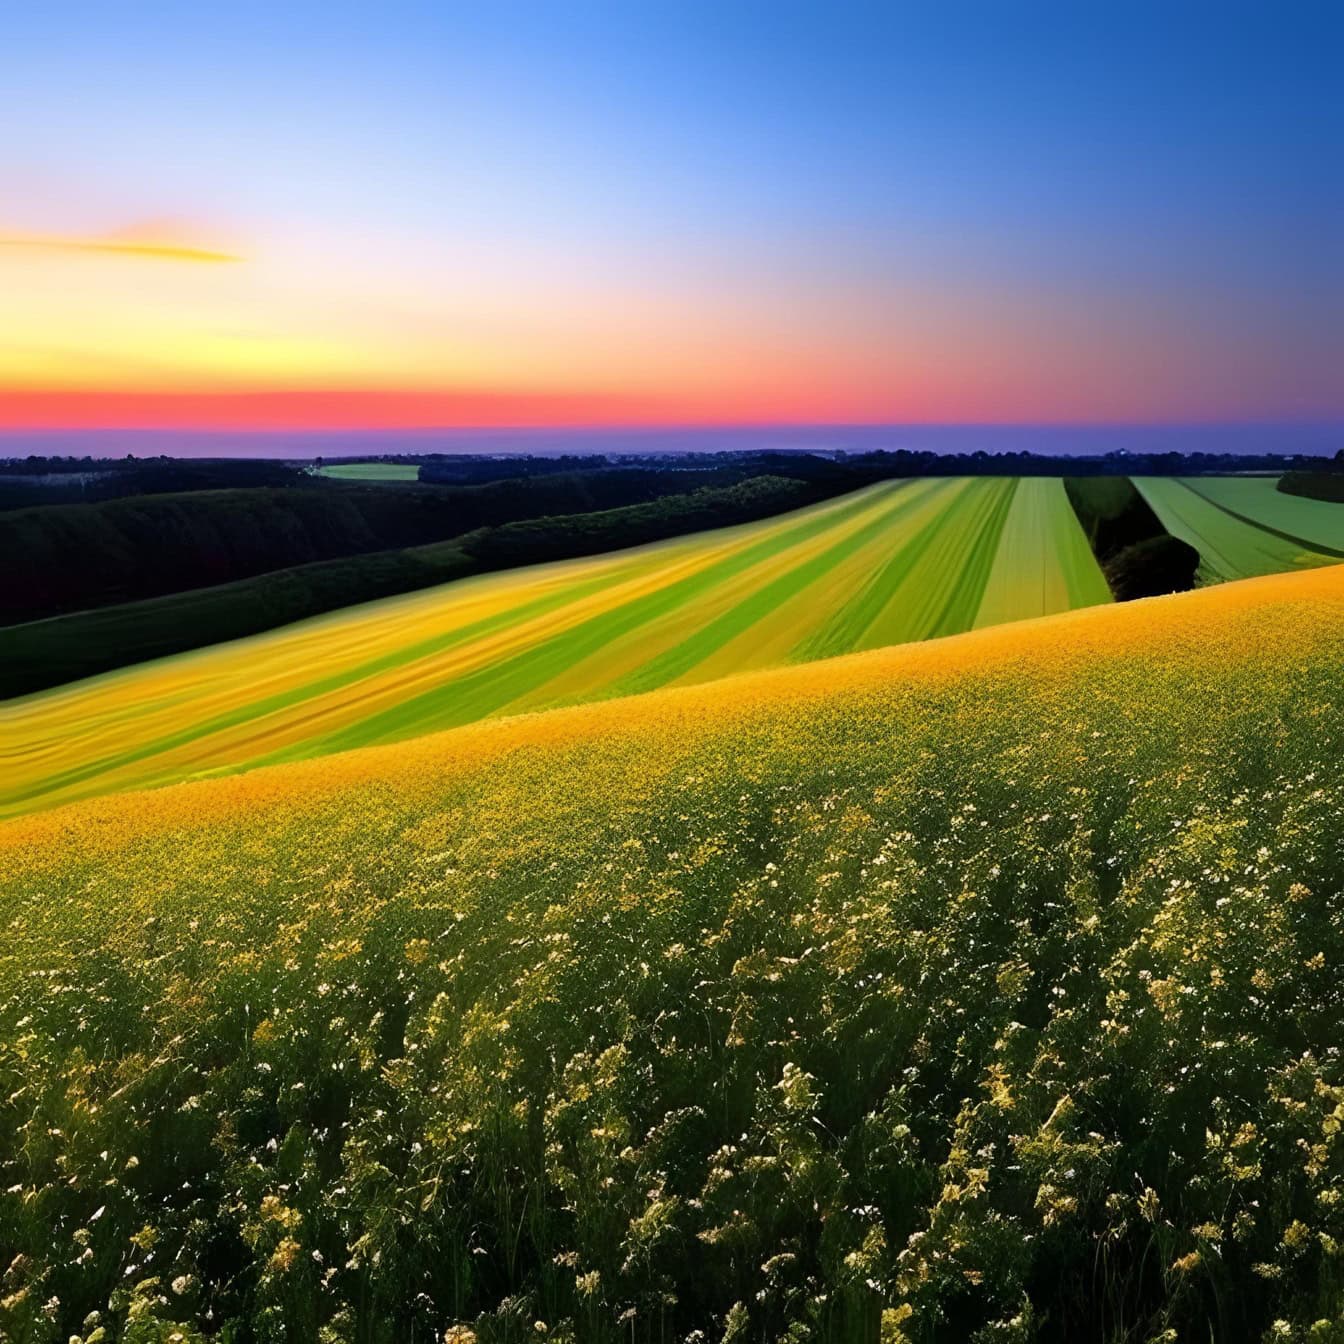 Γραφική απεικόνιση ενός αγρού με λουλούδια στην κορυφή ενός λόφου και μιας γεωργικής γης στο βάθος κατά το ηλιοβασίλεμα